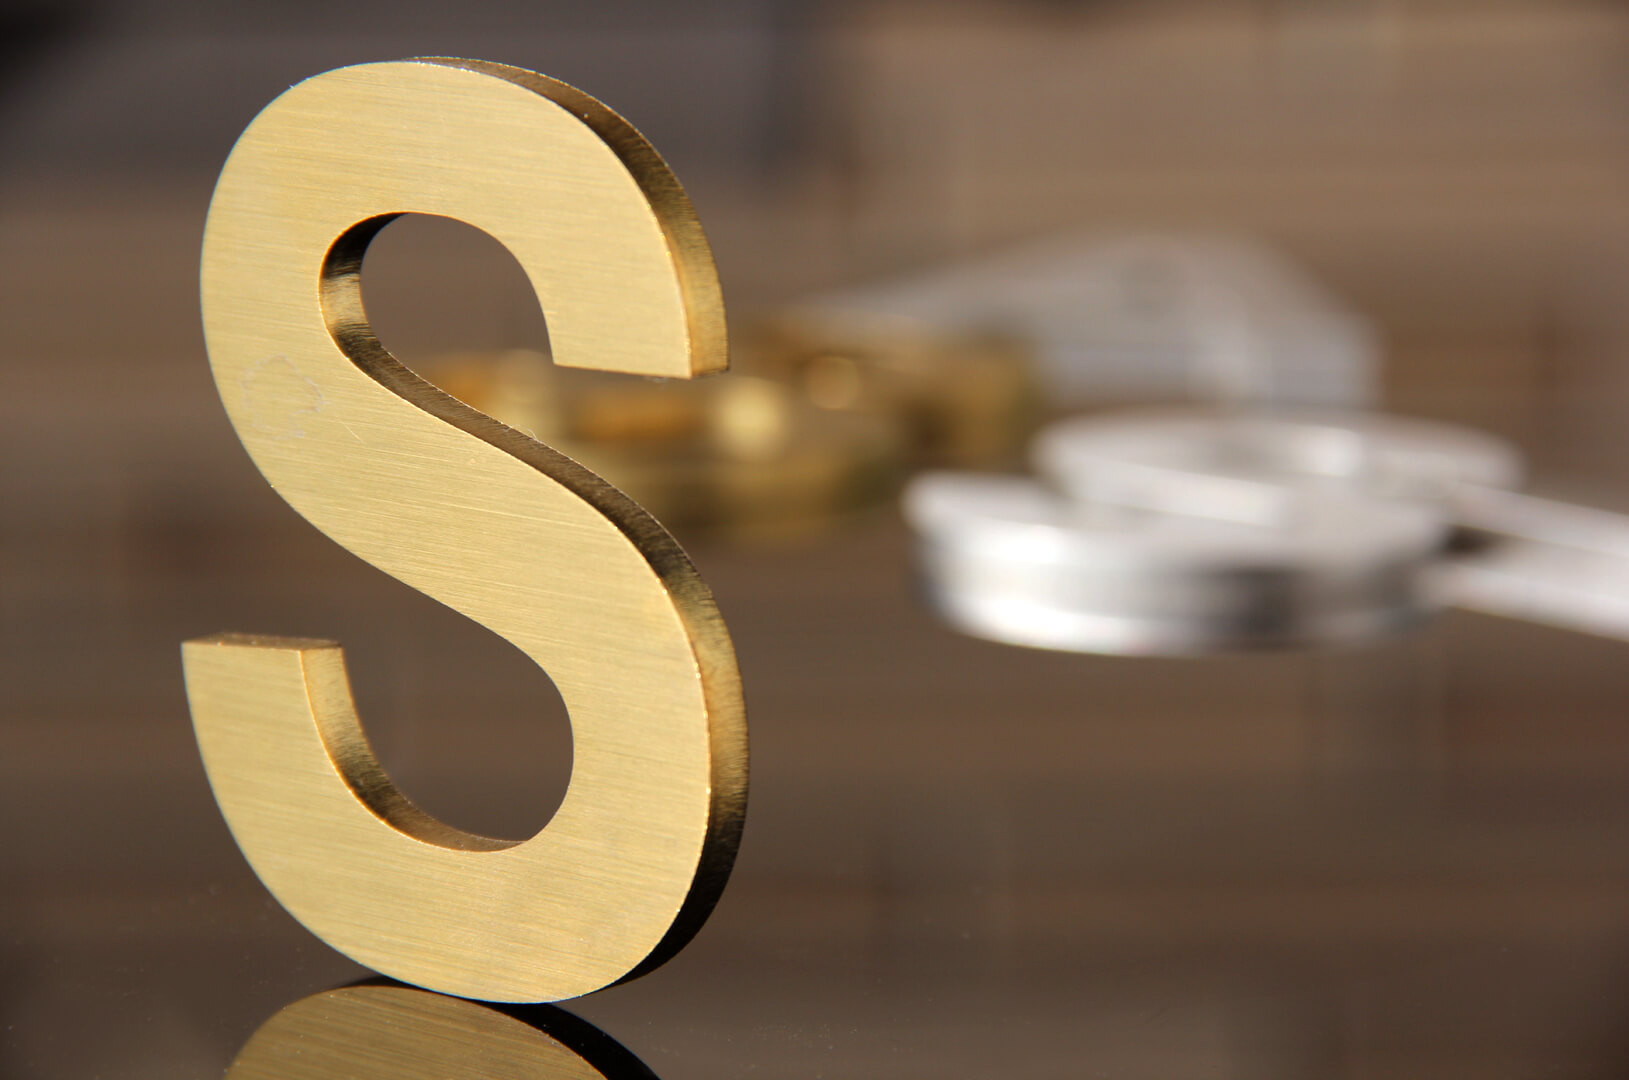 De gouden letter S - Gouden letter S, gemaakt van metaal